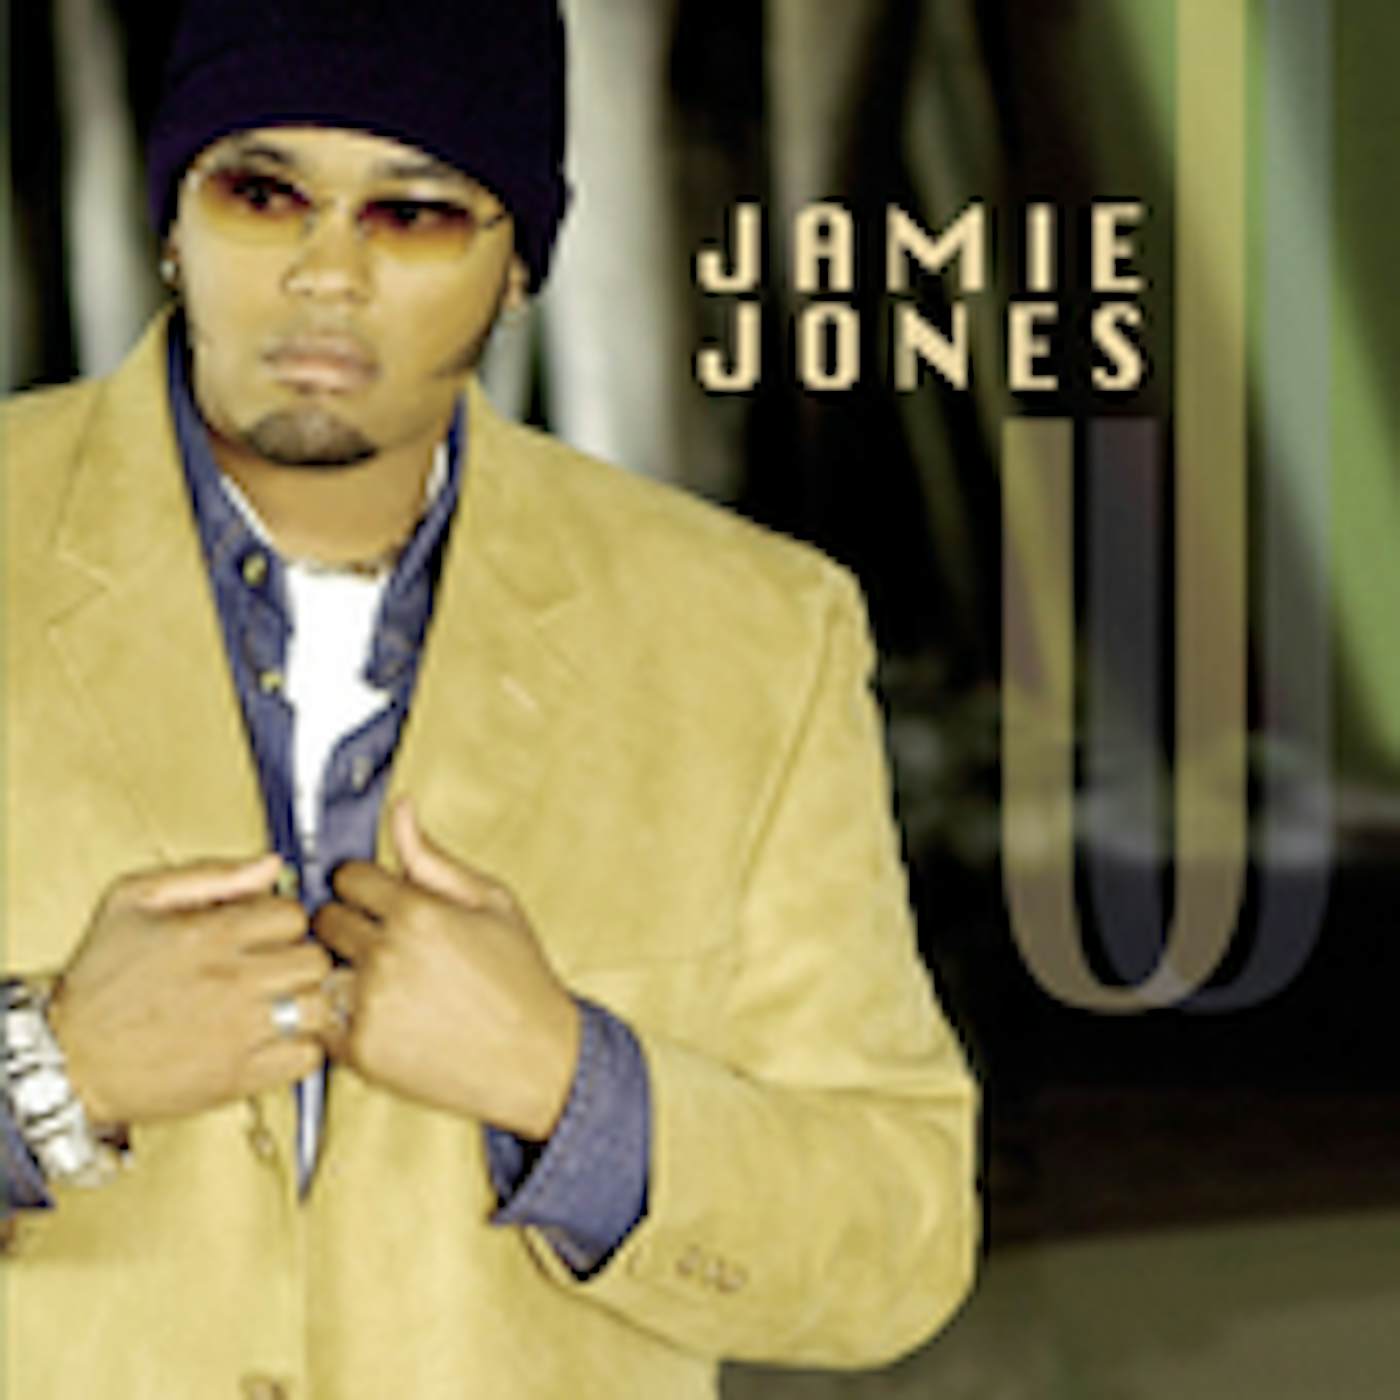 JAMIE JONES CD